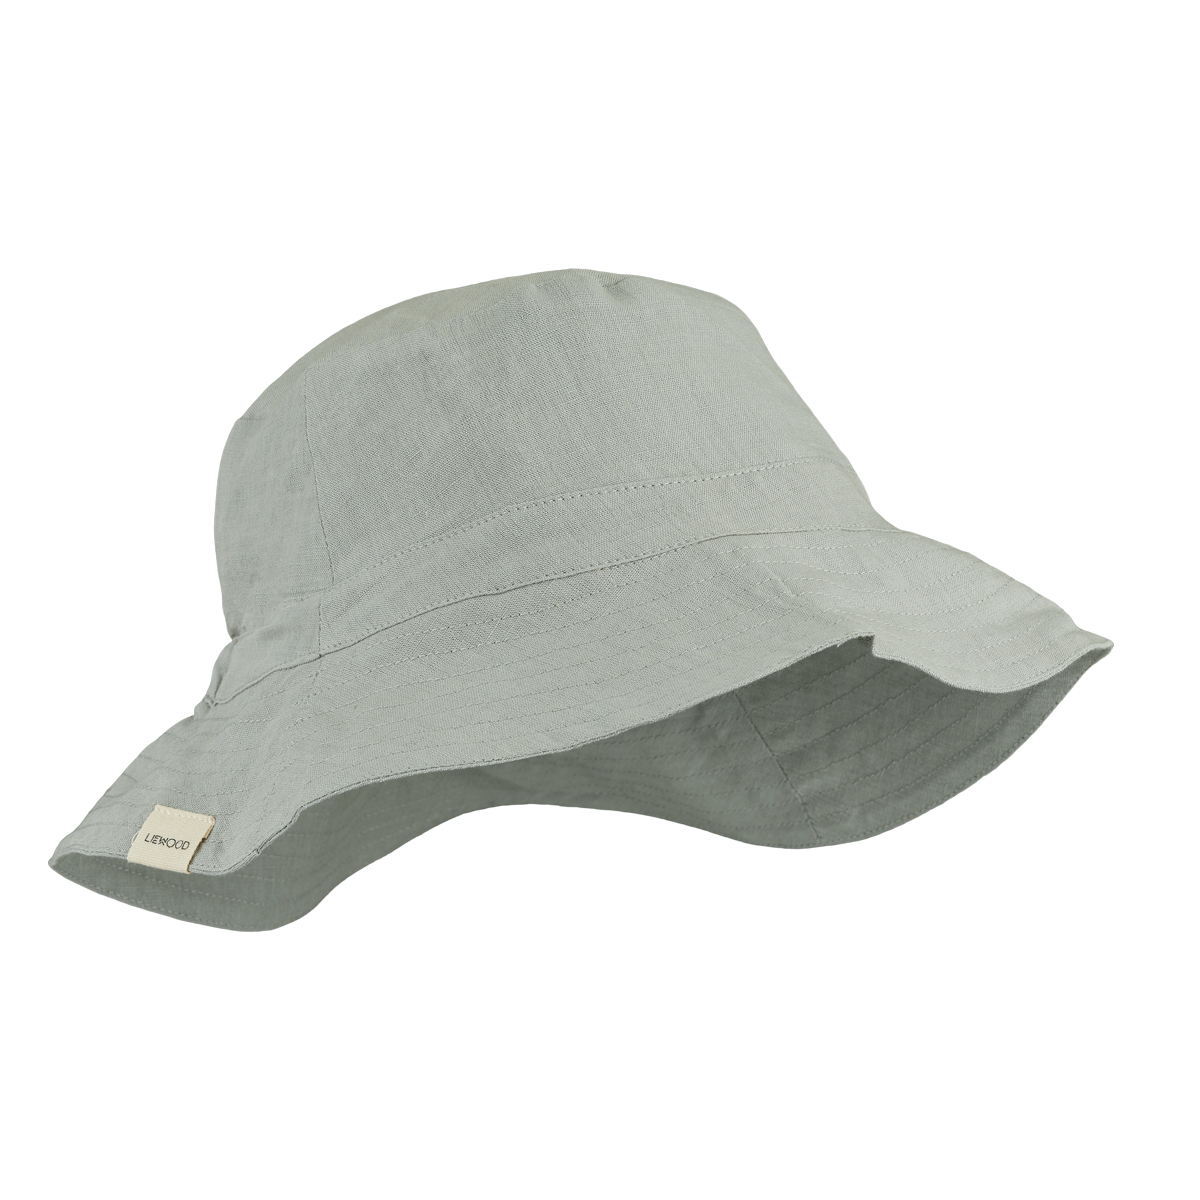 Liewood Delta bucket hat - Dove blue sunhat organic cotton linen